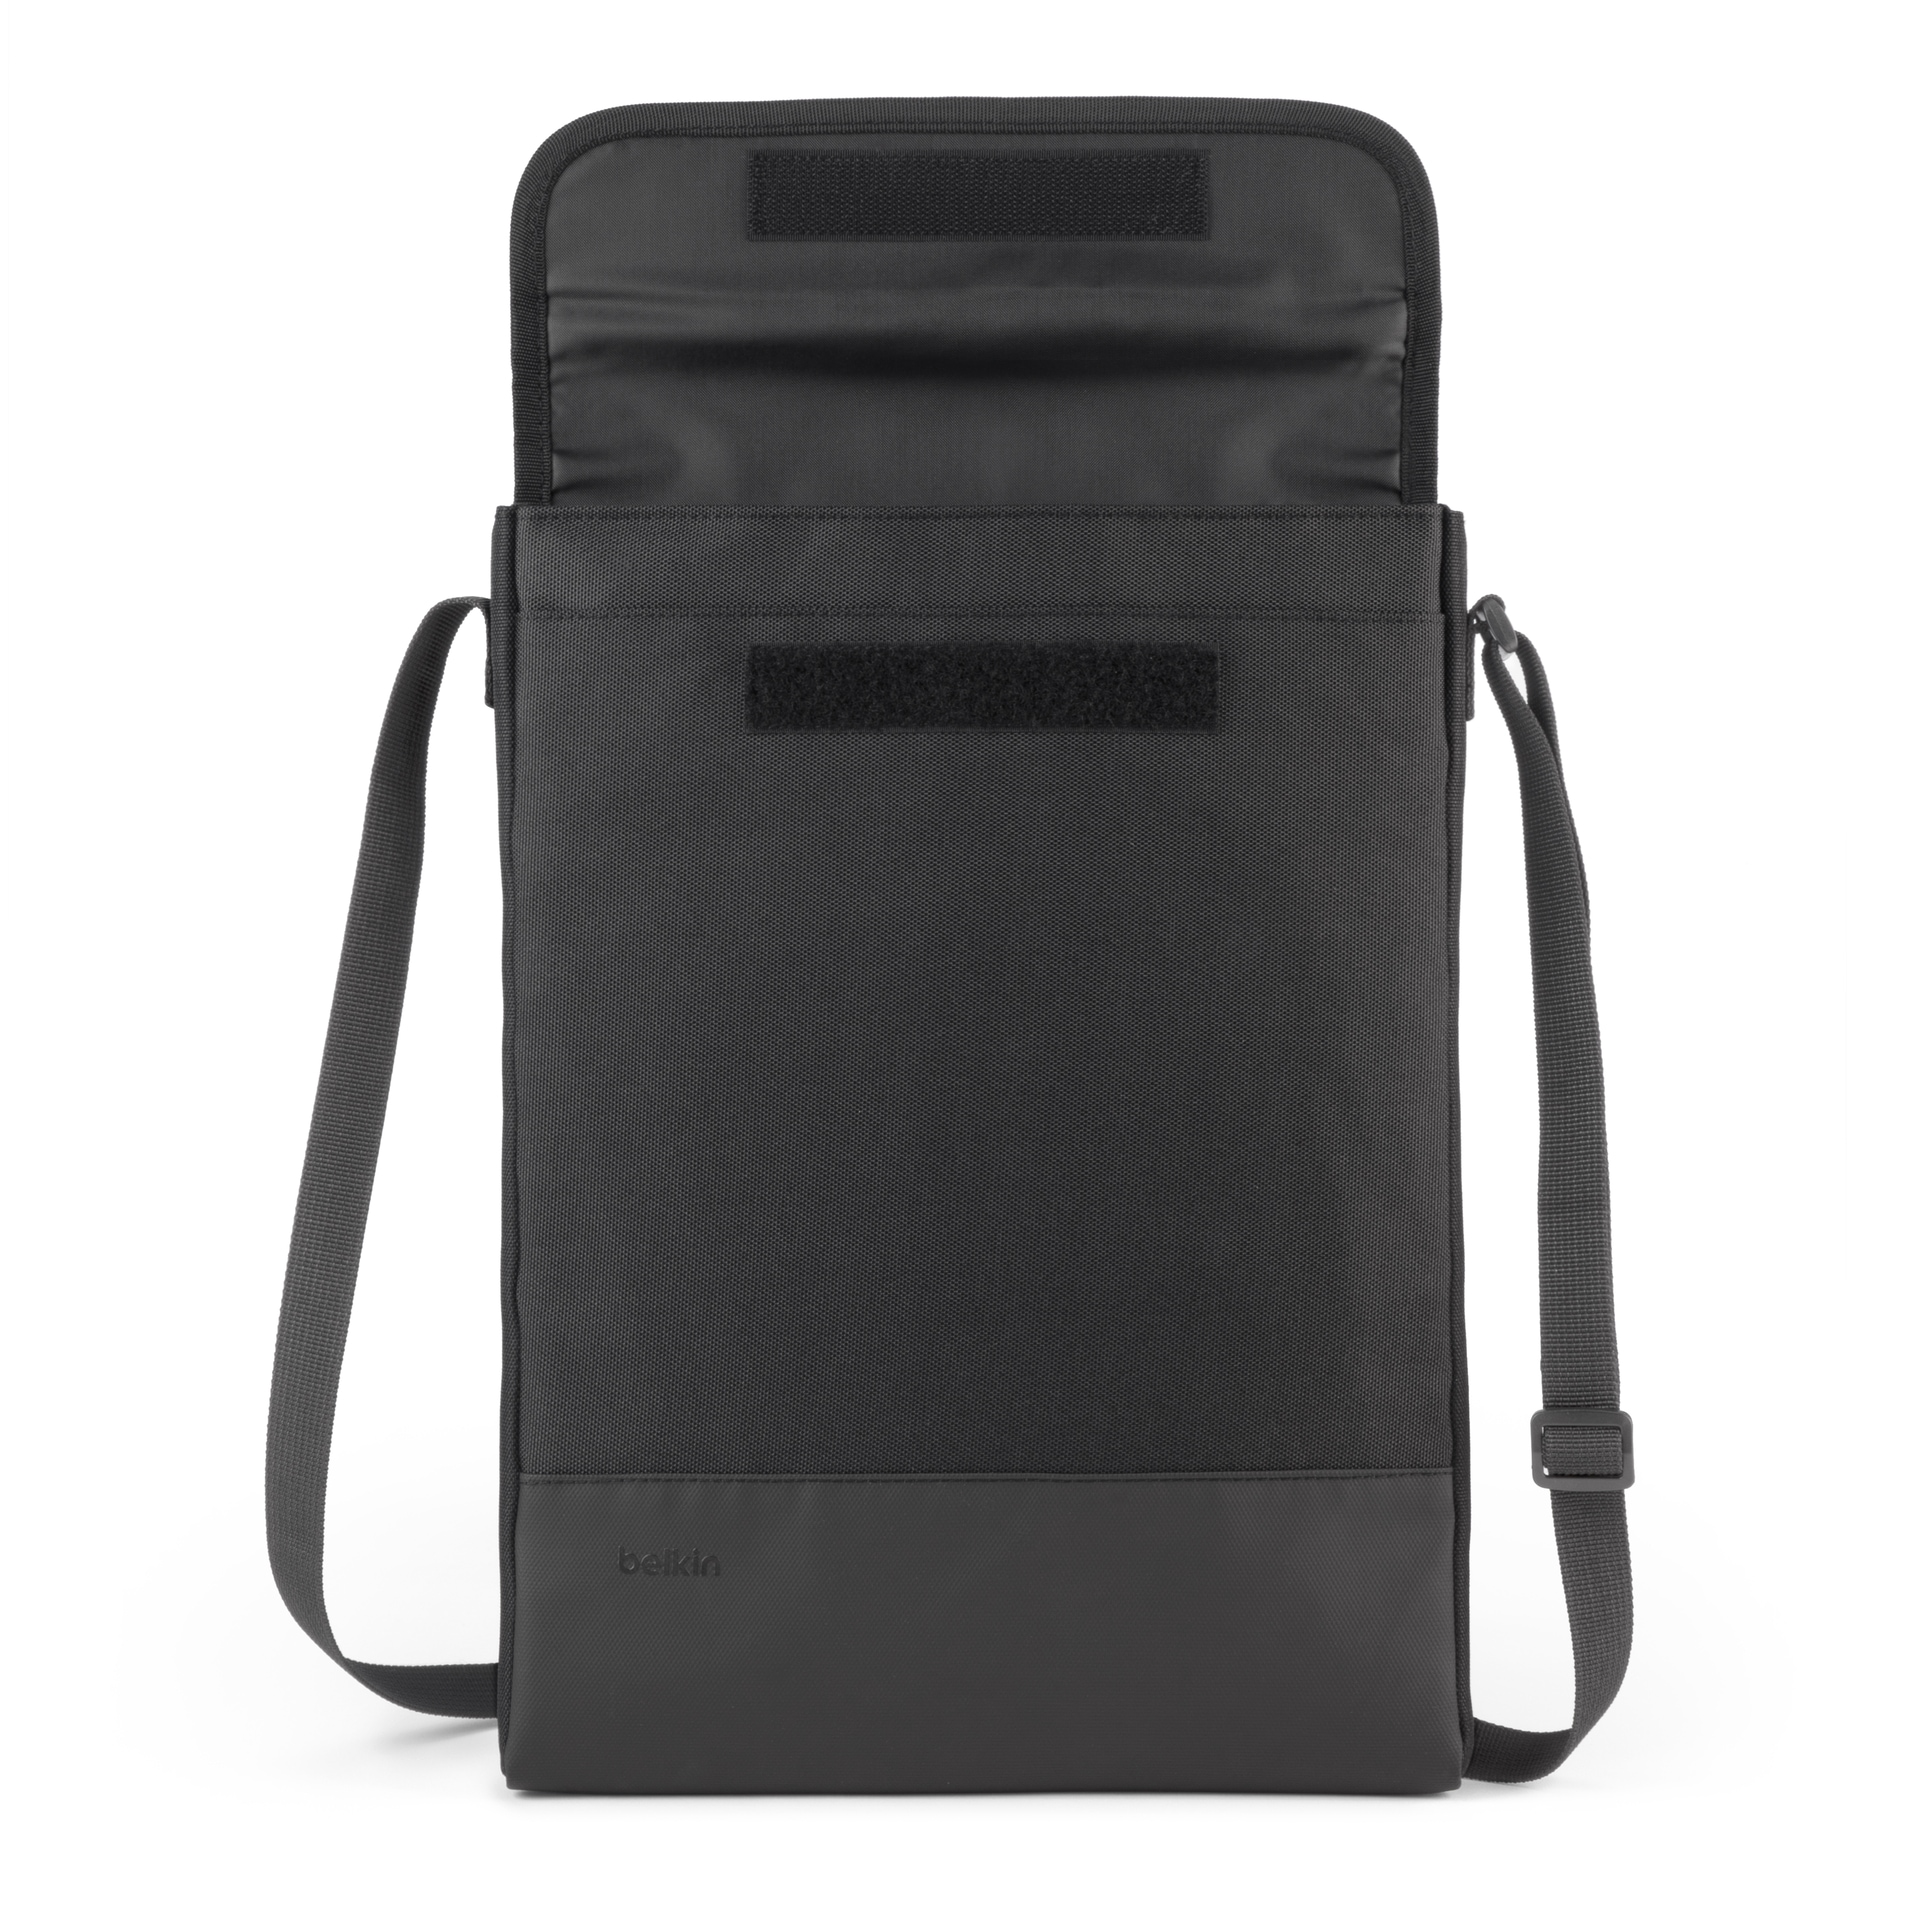 Belkin Laptoptasche »Laptoptasche mit Schulterriemen für Geräte von 14-15«